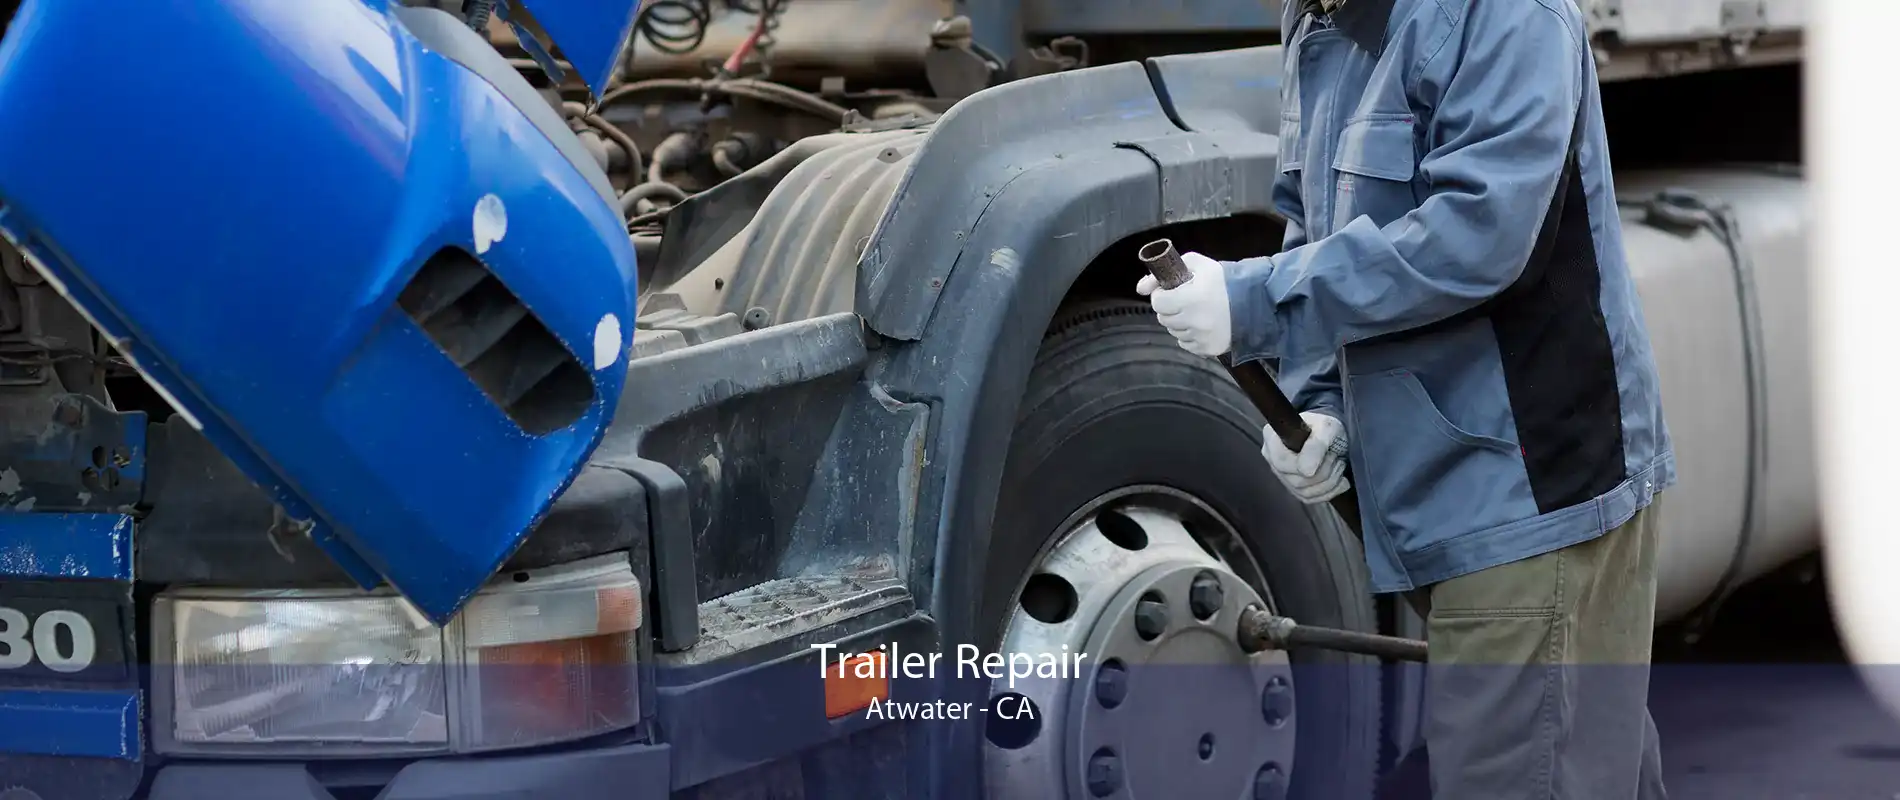 Trailer Repair Atwater - CA